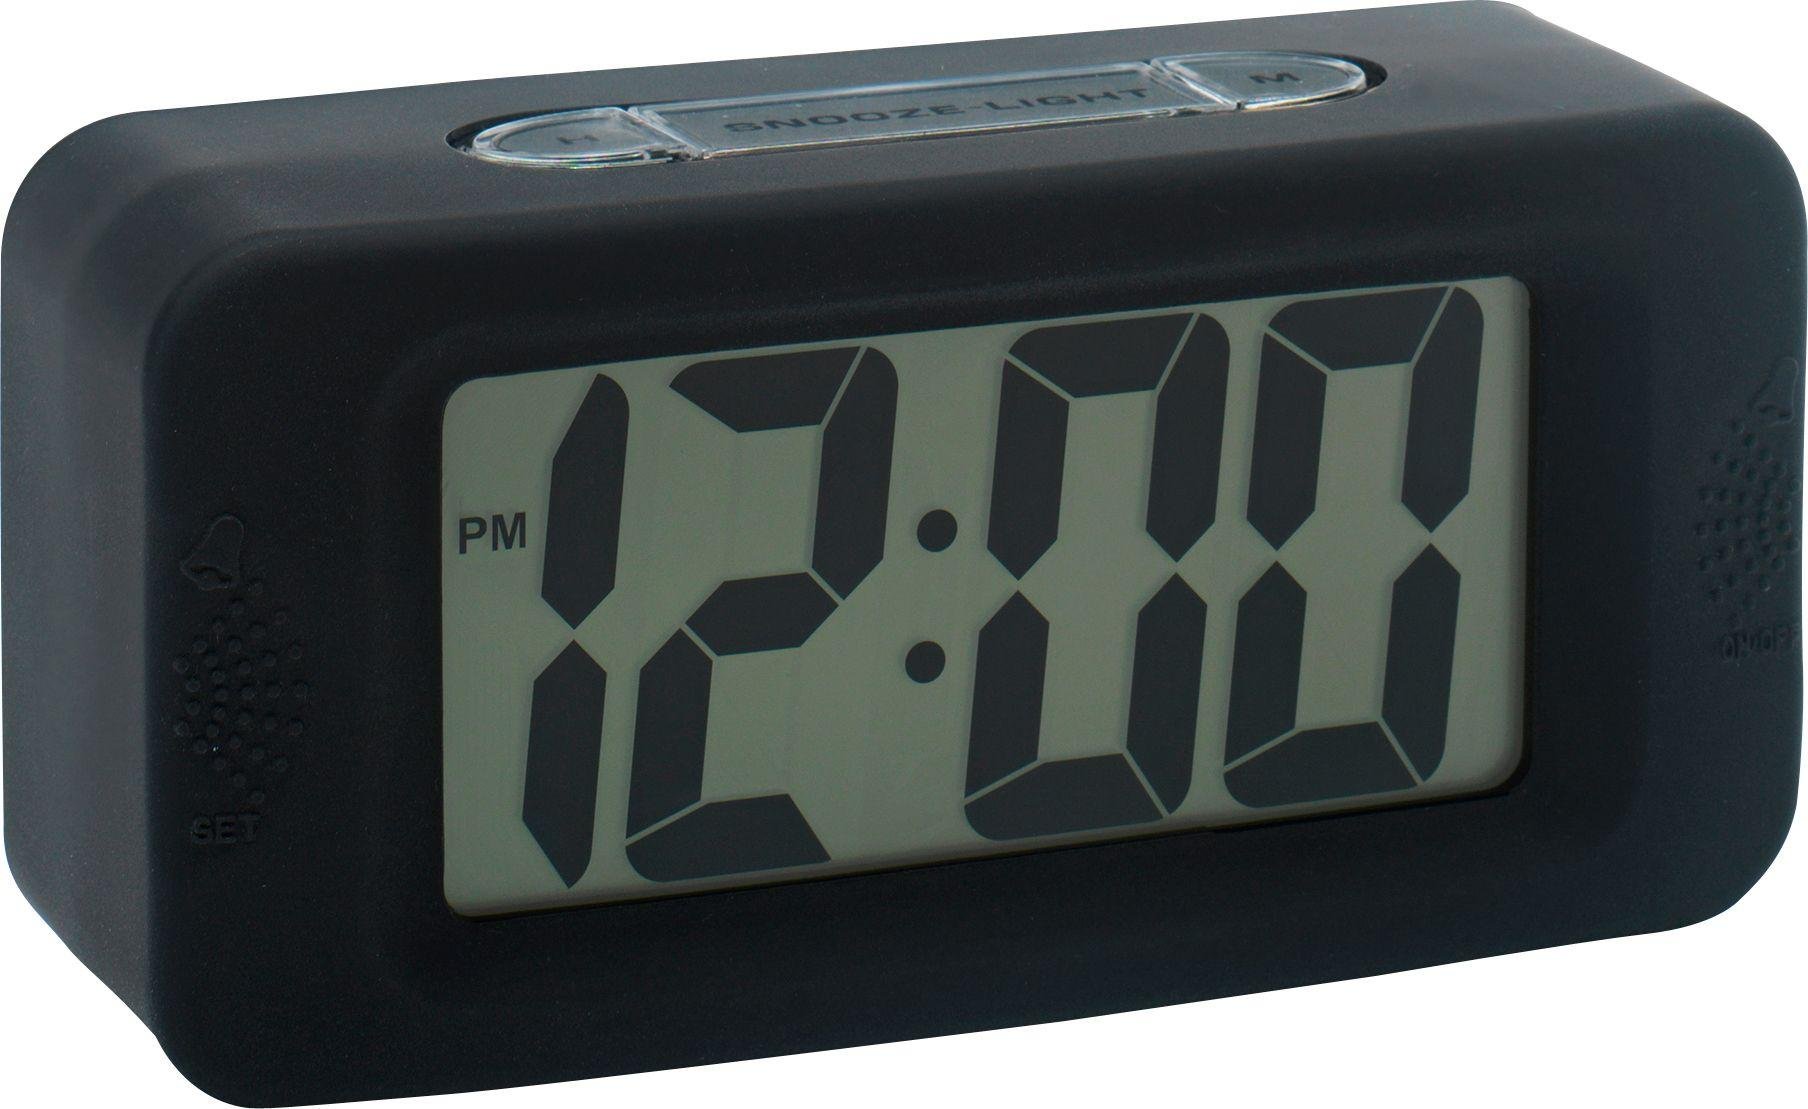 Acctim LCD Alarm Clock Review